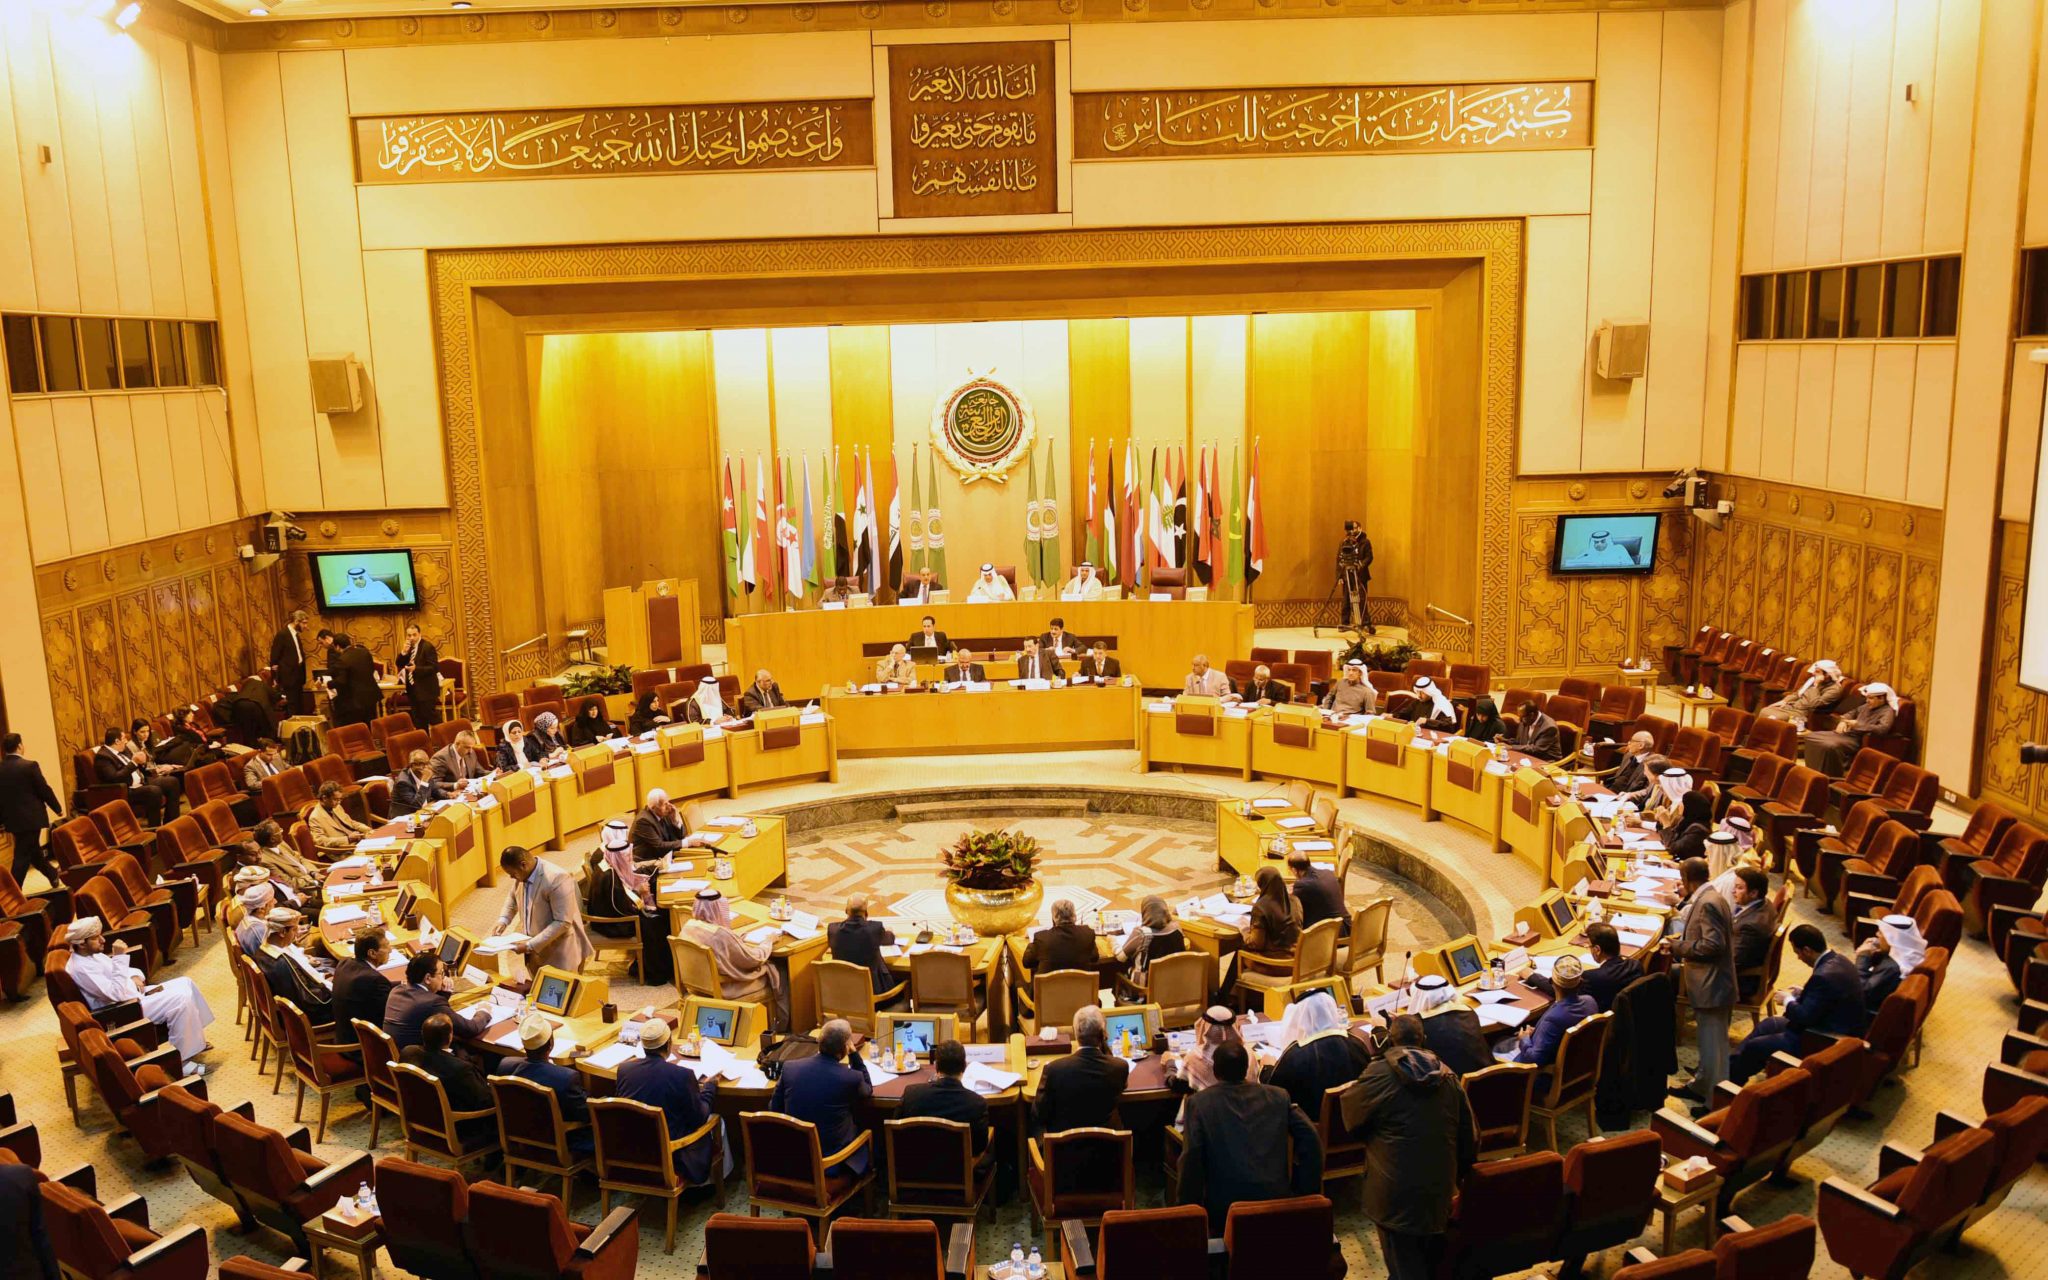   اليوم : تنطلق ندوة التكامل الاقتصادي العربي بالجامعة العربية